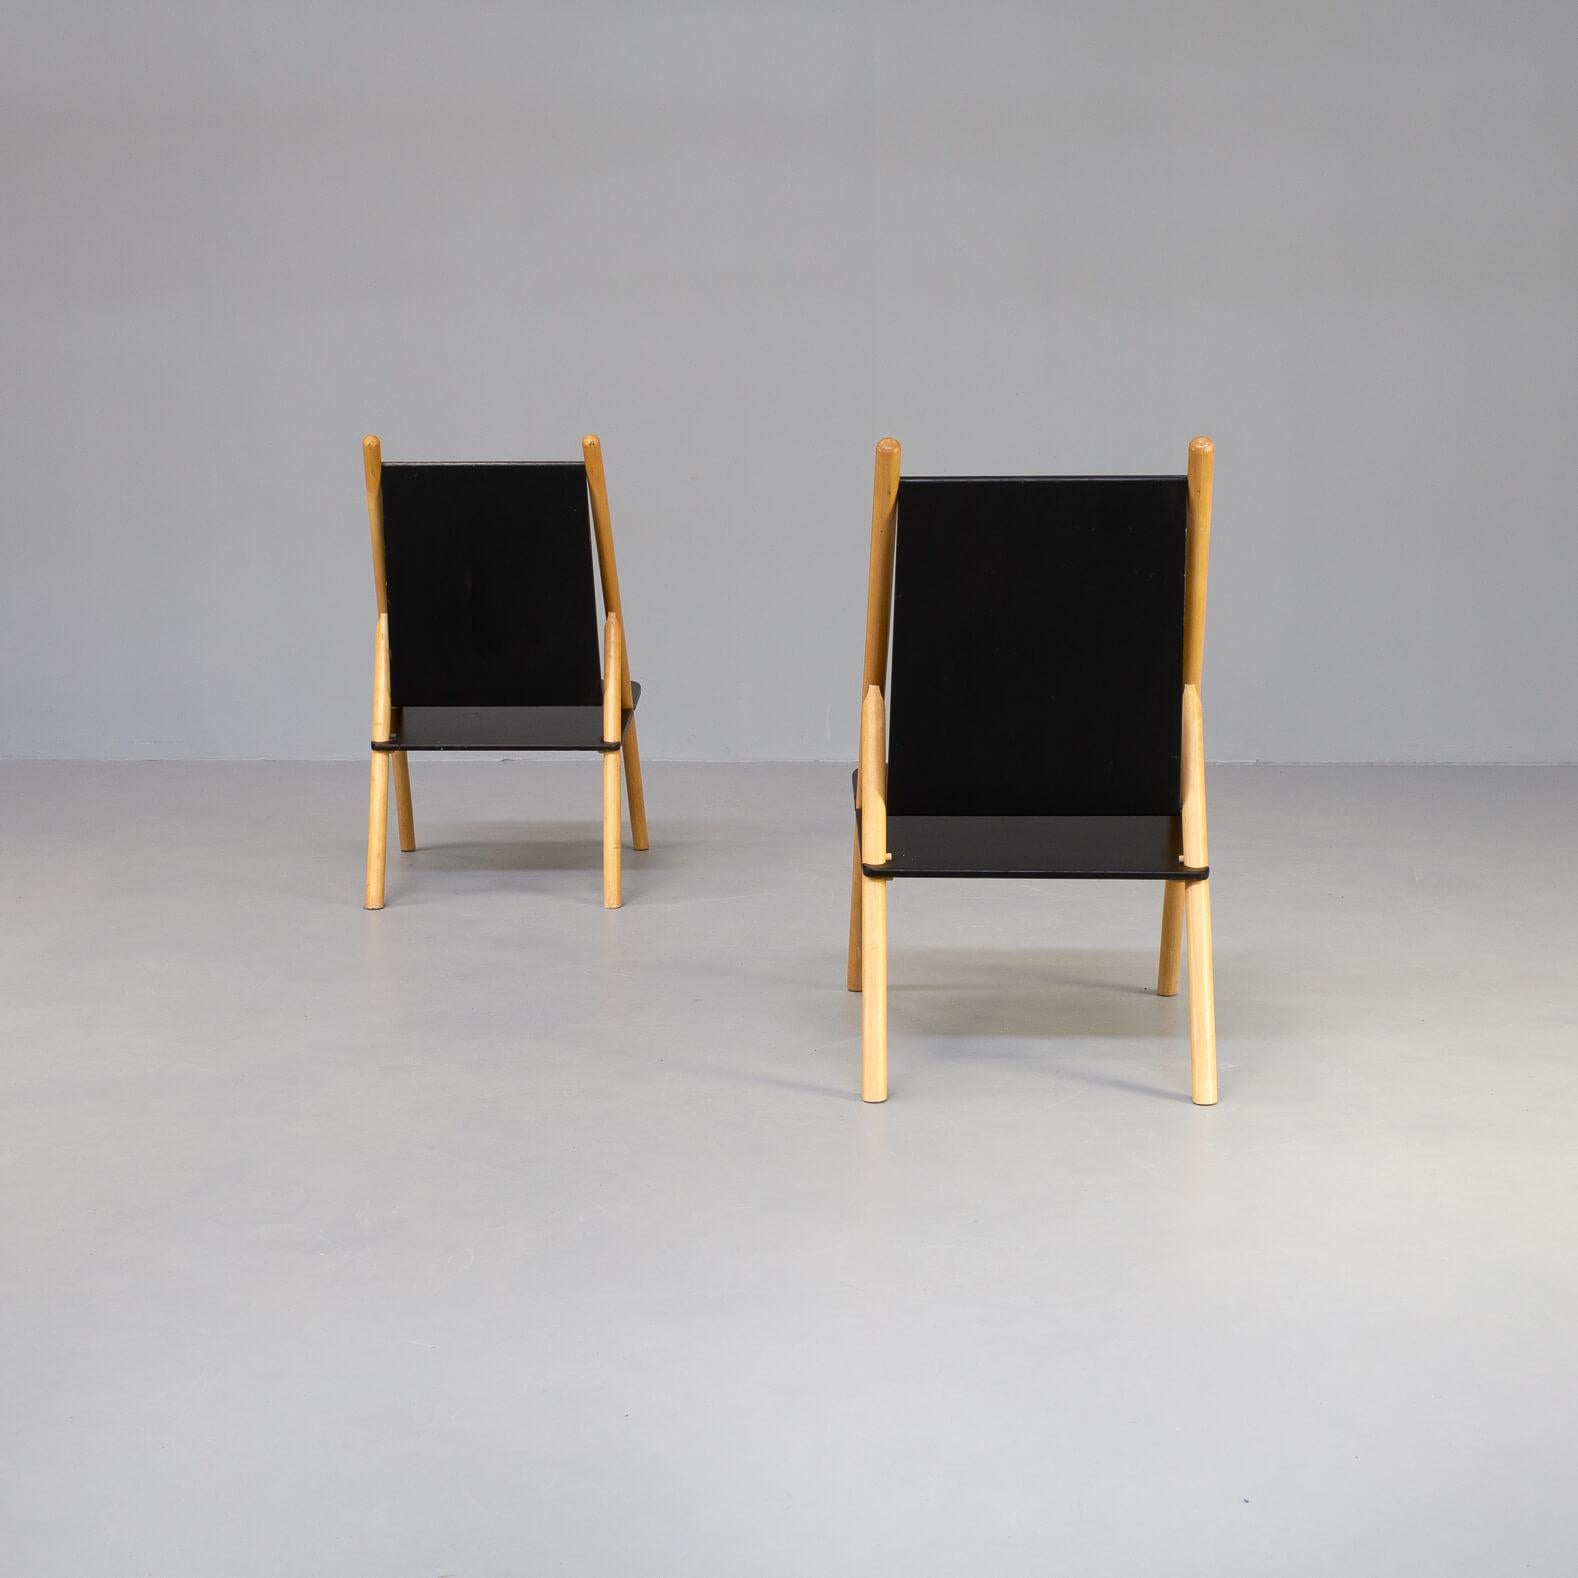 70s Yrjo Wihermheimo & Rudi Merz ‘Pinna’ Chair for Korkeakosko OY Set/2 For Sale 1